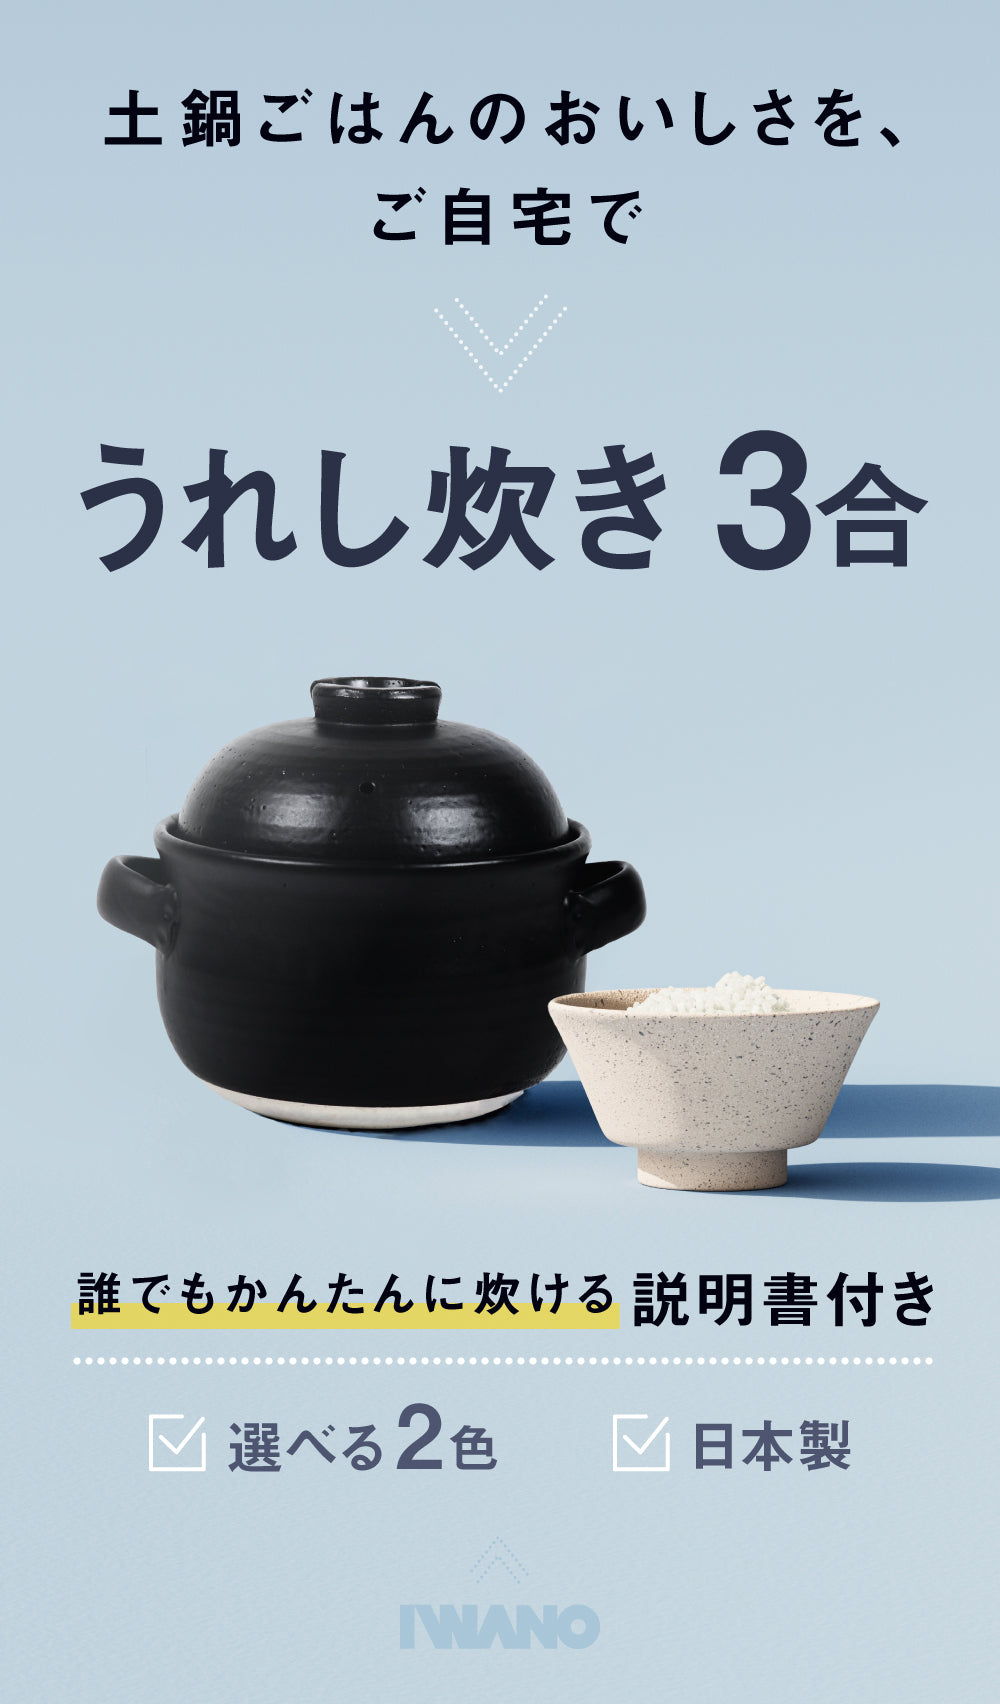 うれし炊き 3合 IWANO公式オンラインストア